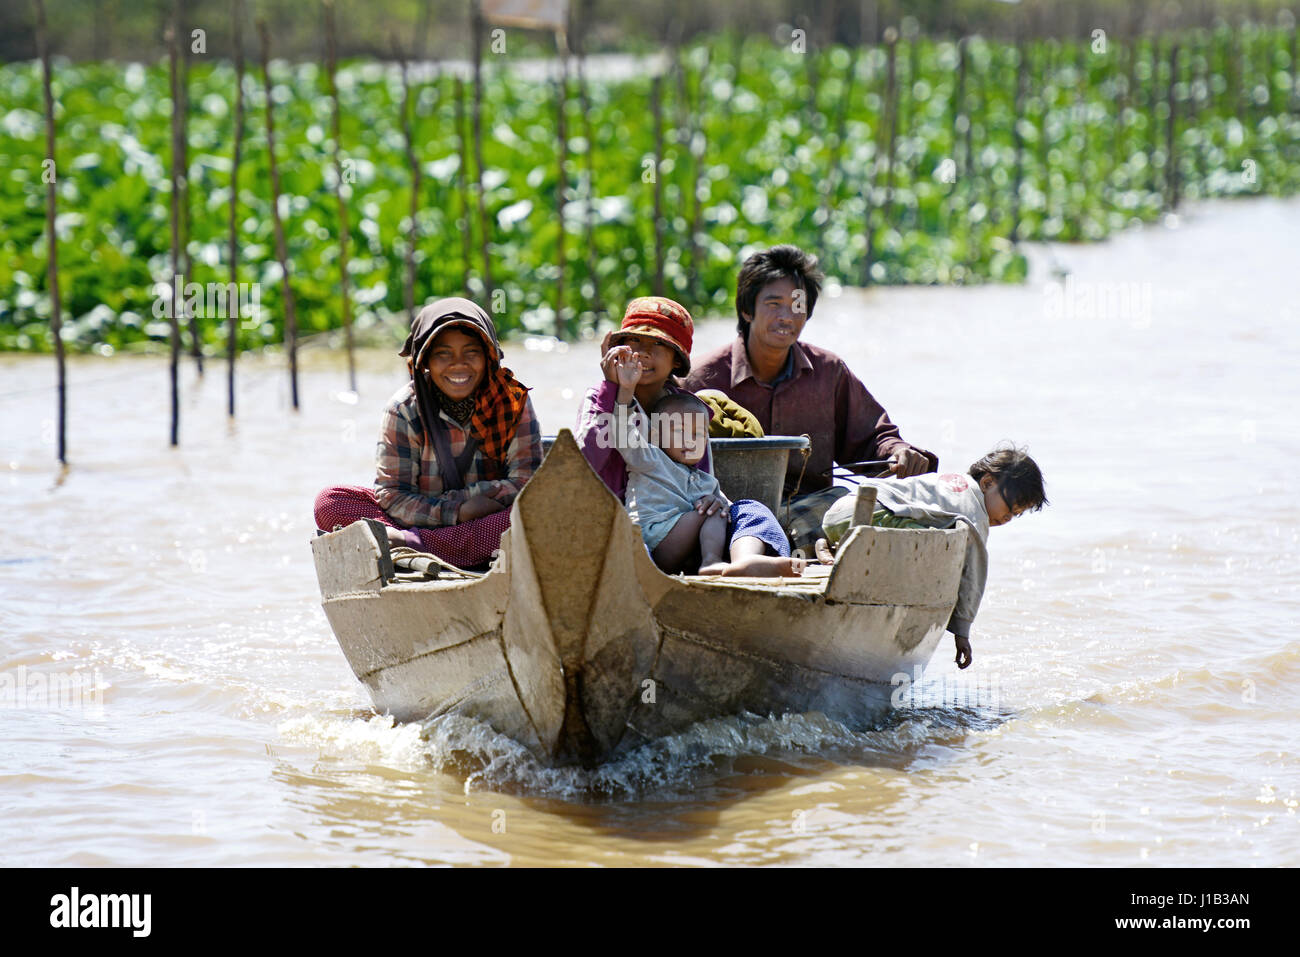 La vie dans le village de pêcheurs de KOMPONG Khleang, un village unique sur pilotis sur la rive du lac Tonle Sap dans la province de Siem Reap au Cambodge. Banque D'Images